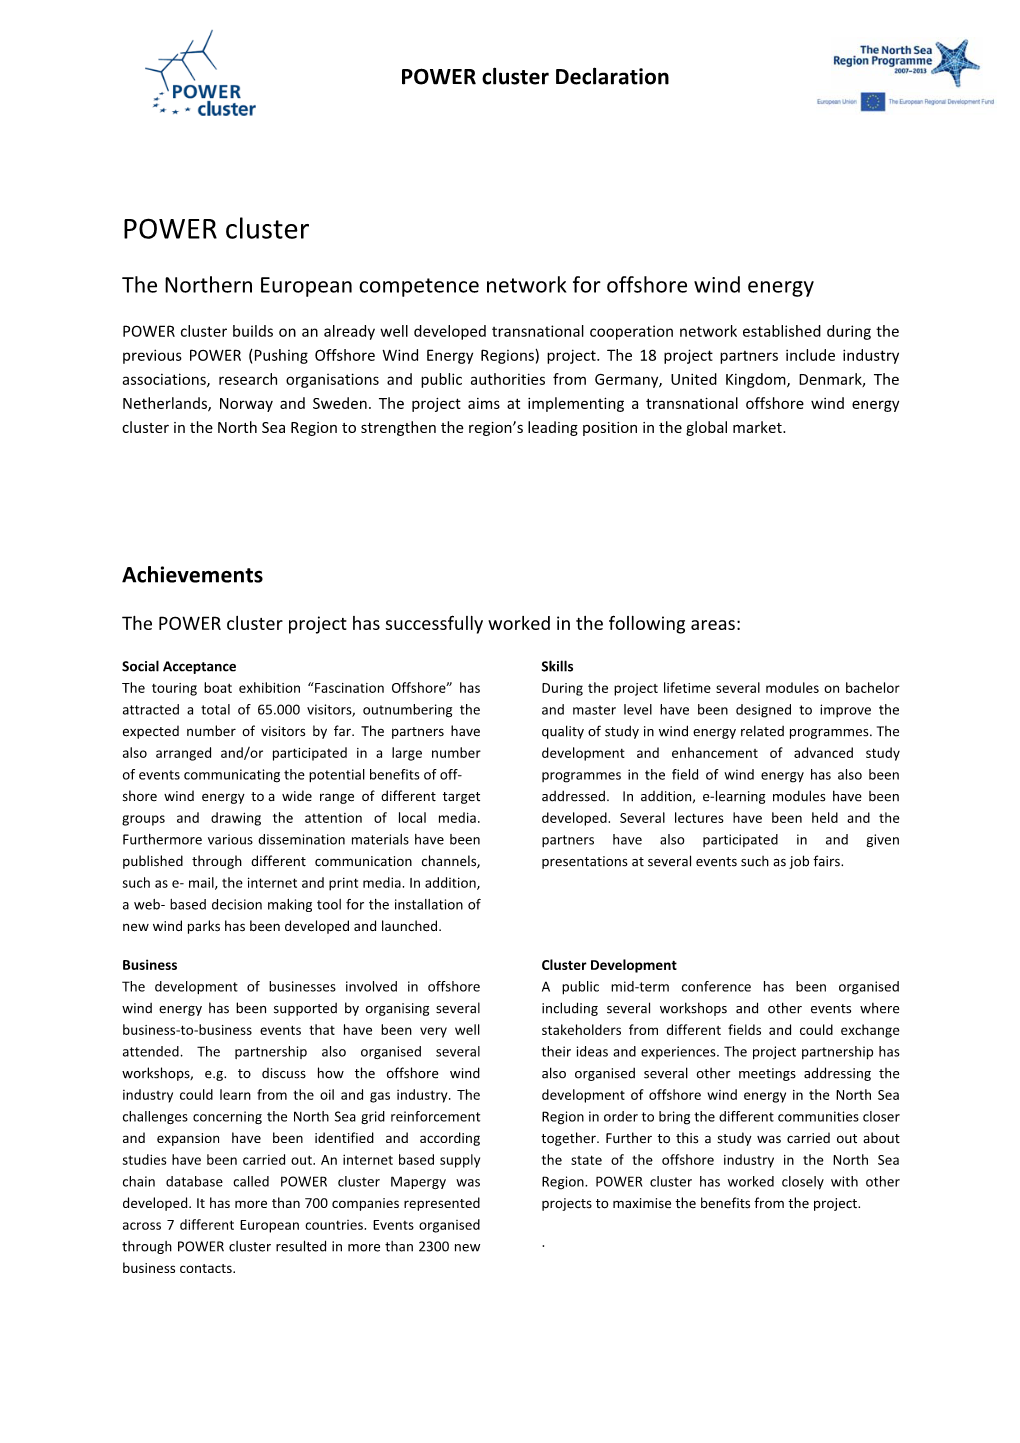 POWER Cluster Declaration